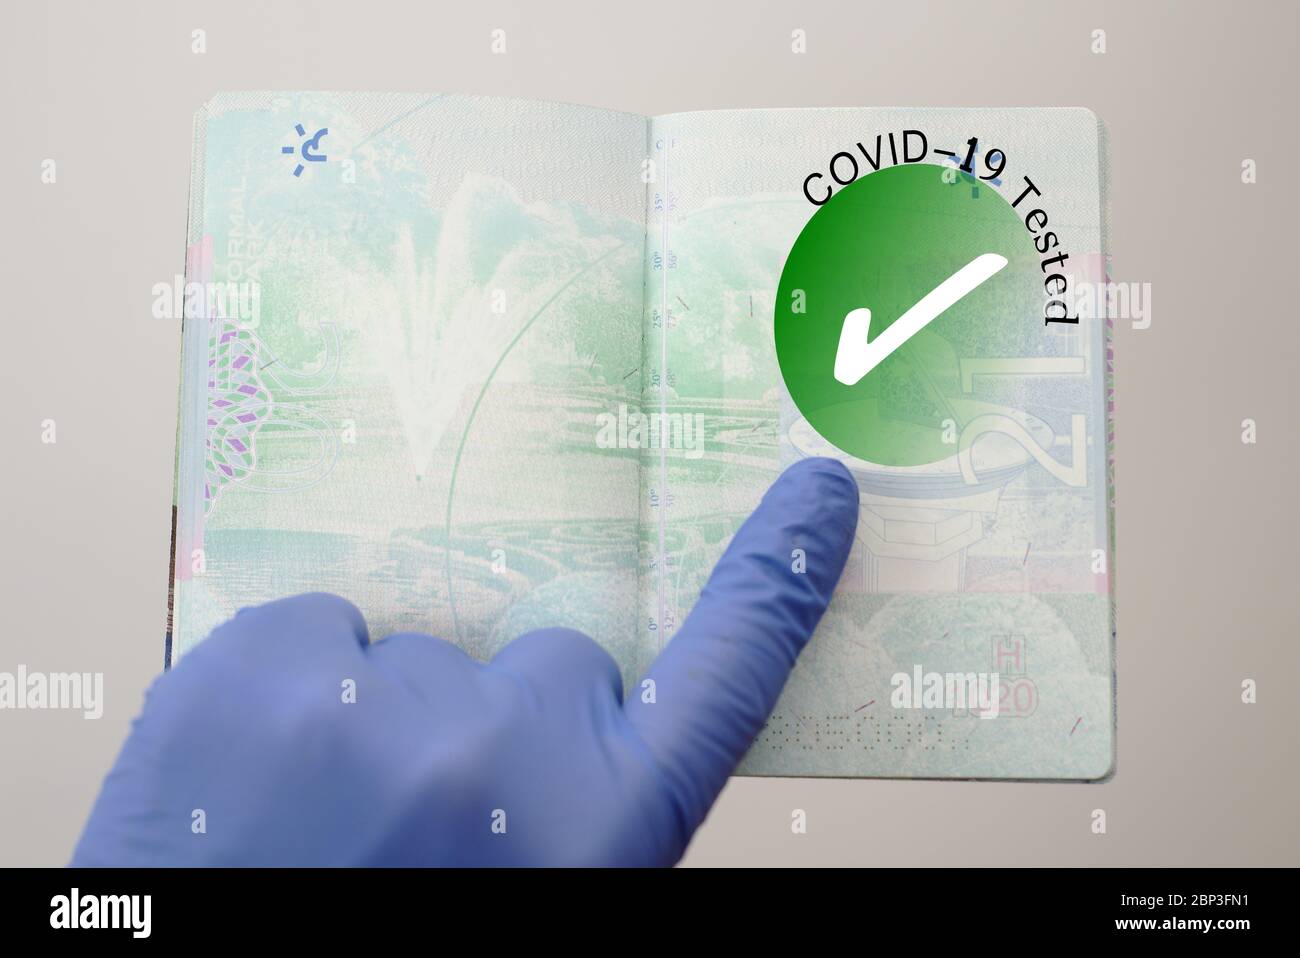 Immagine del concetto di passaporto per l'integrità. Immunità covid-19 controllo sanitario timbro in un passaporto che permette il viaggio durante la pandemia di Coronavirus Foto Stock